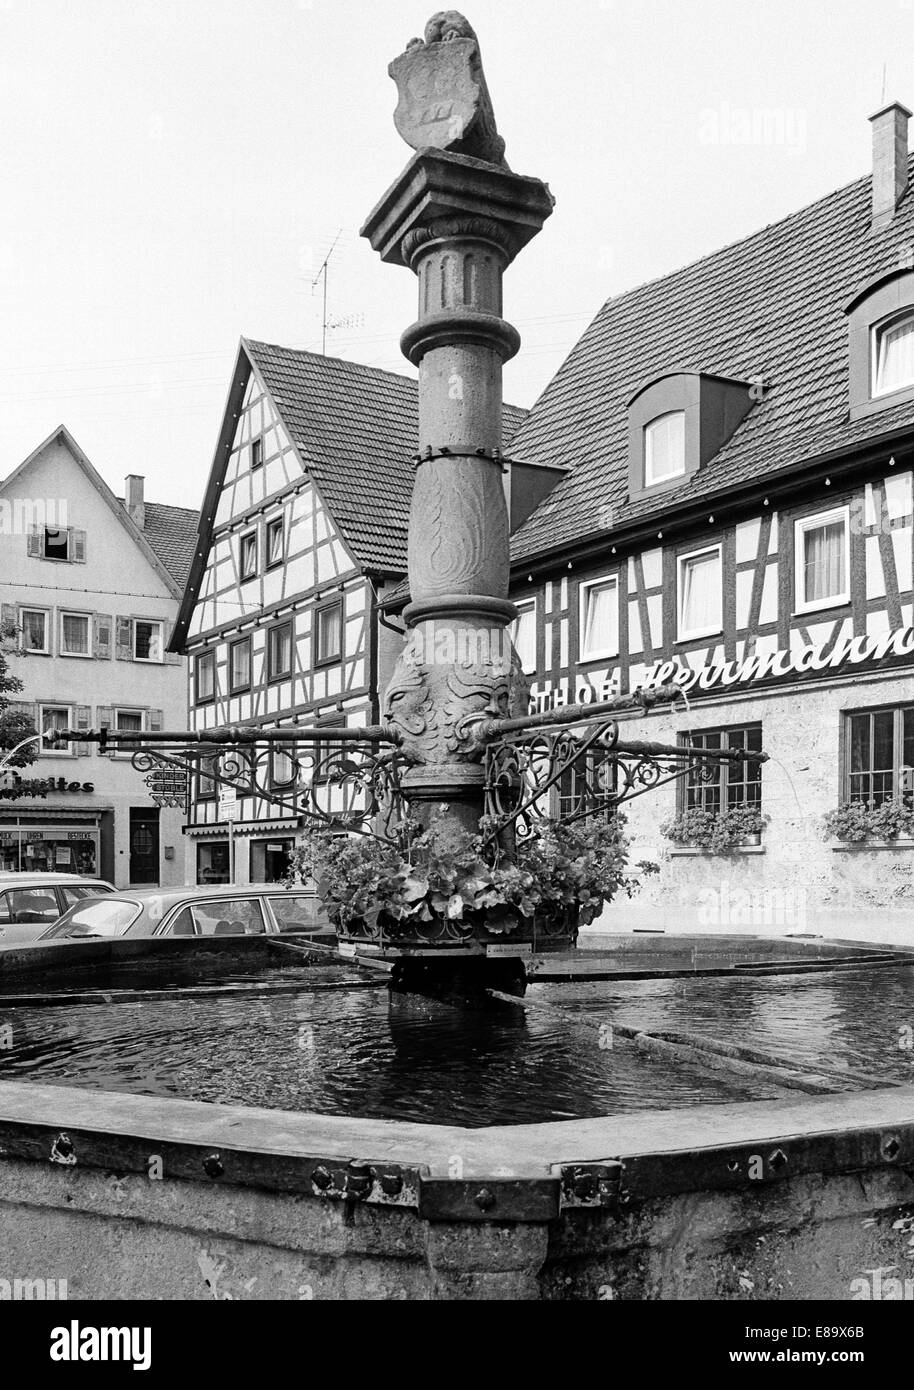 Achtziger Jahre, Marktbrunnen und Fachwerkhaeuser am Marktplatz von ...